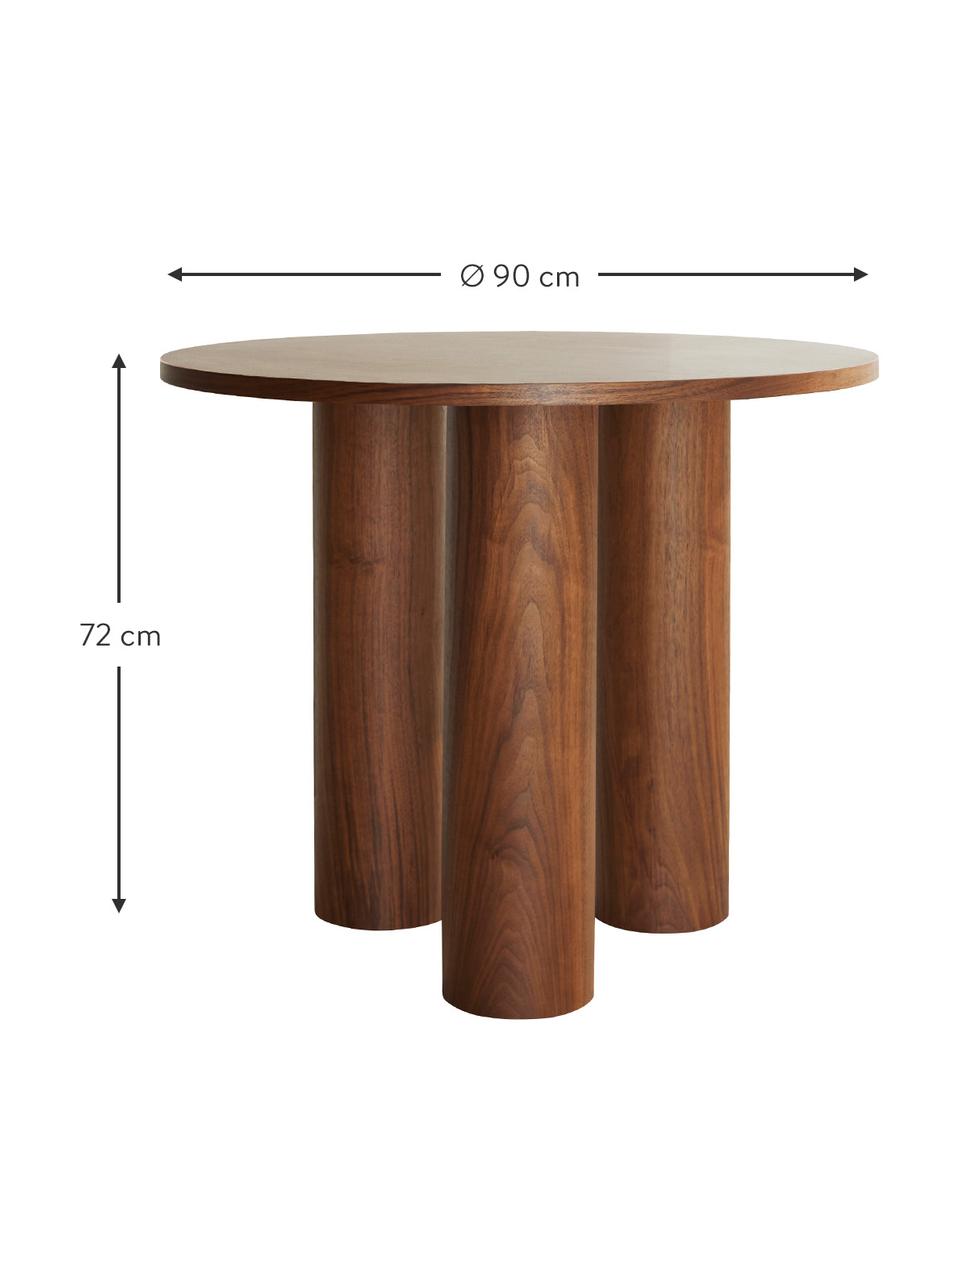 Runder Tisch Colette aus Holz, Mitteldichte Holzfaserplatte (MDF), mit Walnussholzfurnier, Holz, Ø 90 x H 72 cm